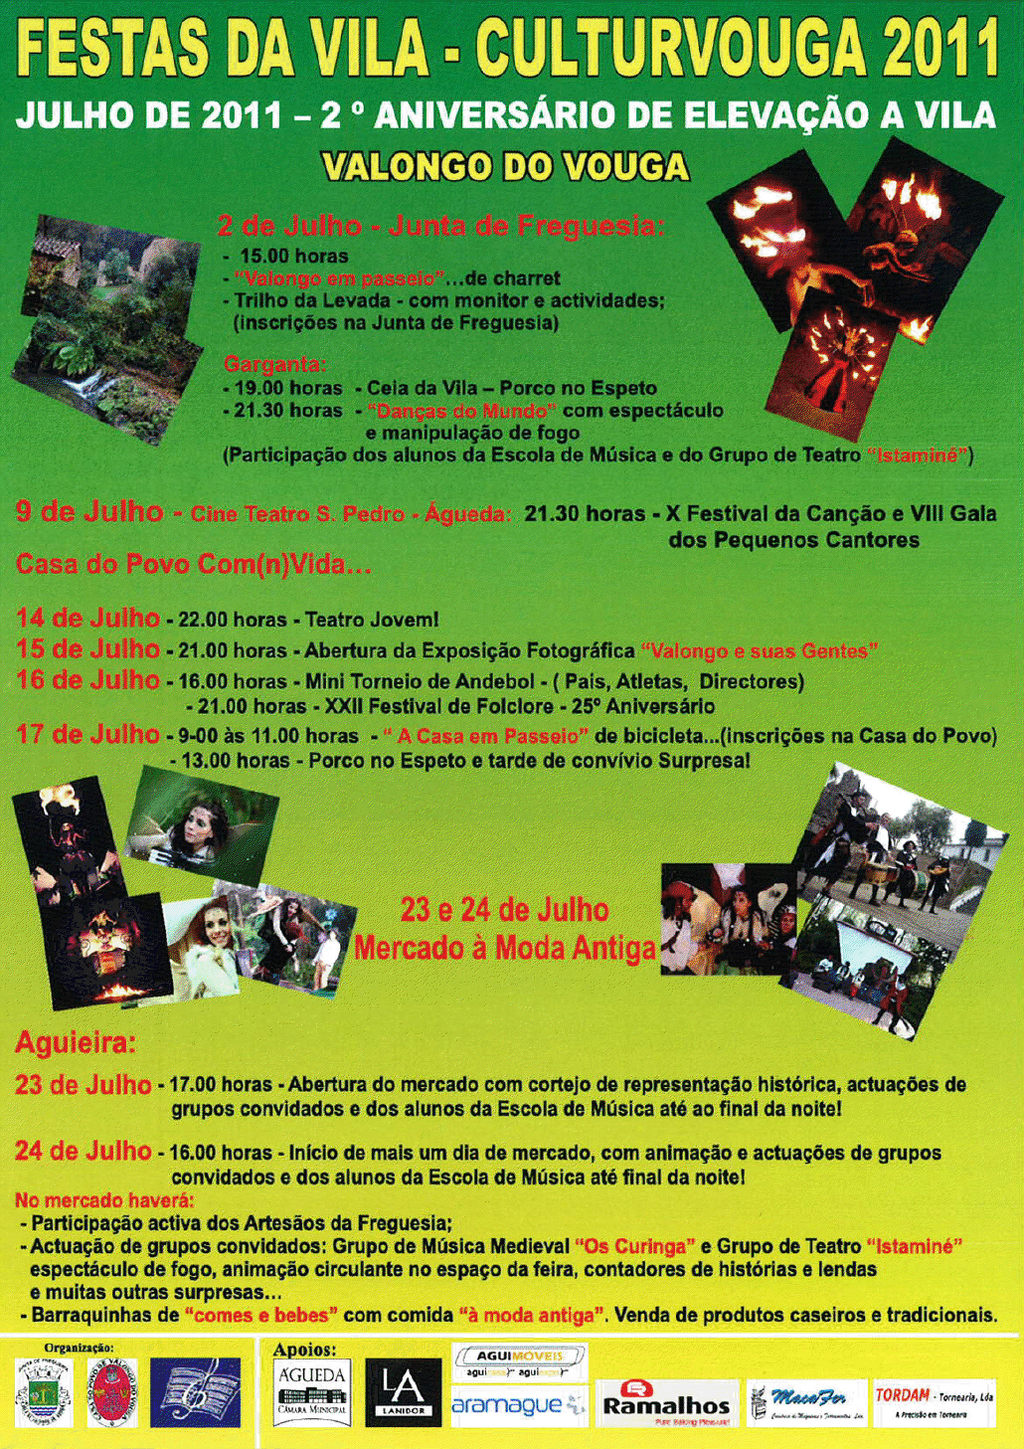 2.º Aniv. de Elevação a Vila de Valongo do Vouga :: Festas da Vila - CulturVouga 2011